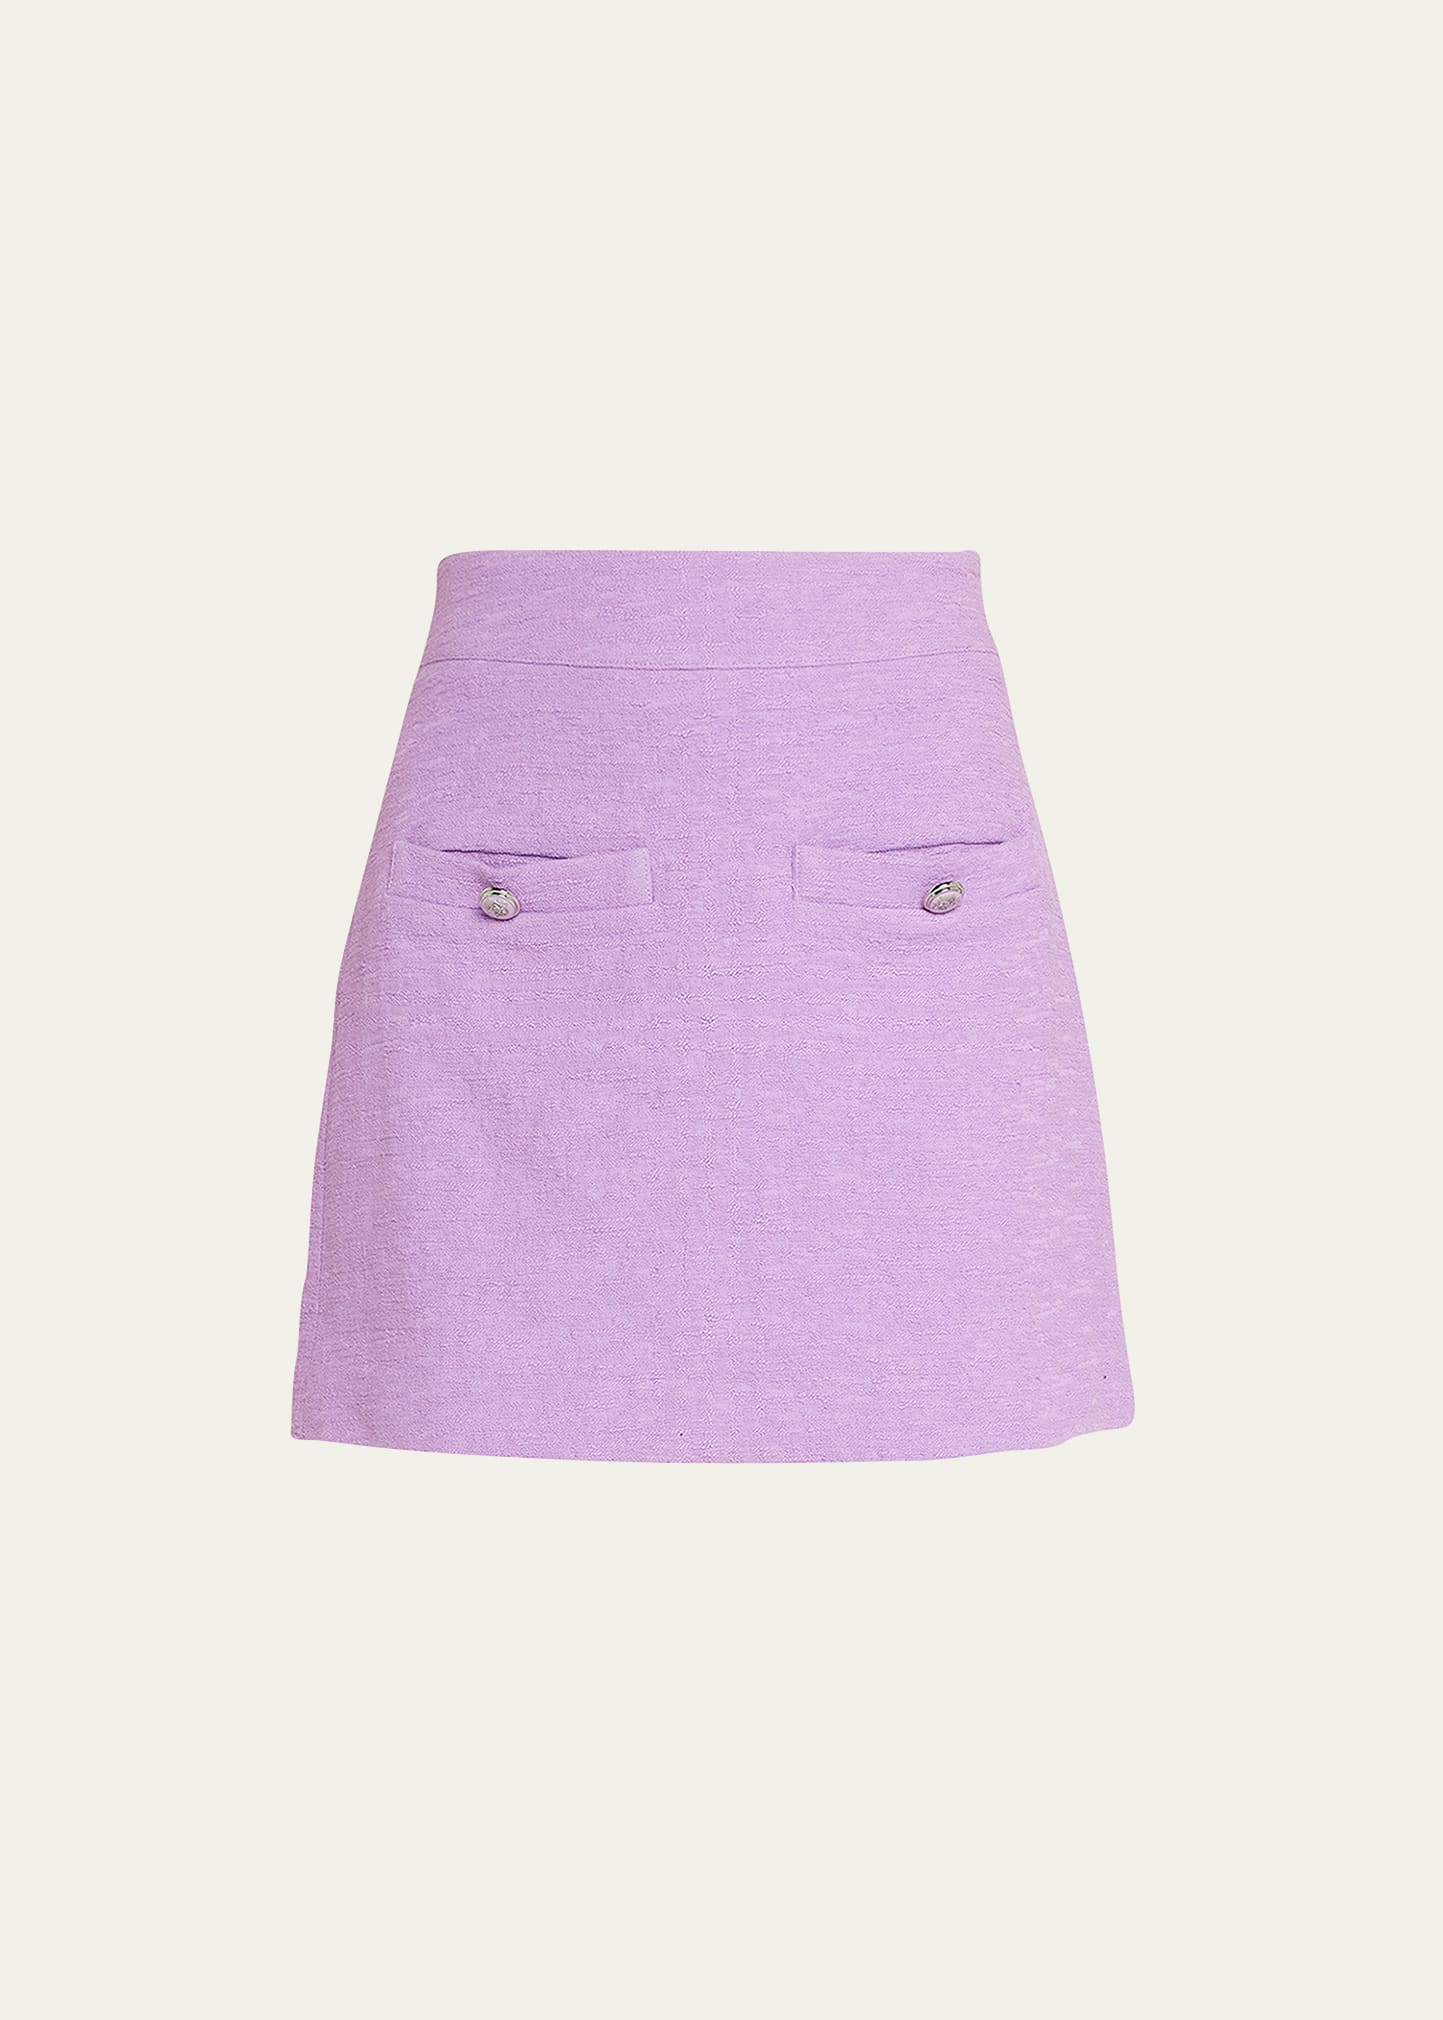 Veronica Beard Emar Mini Skirt In Violet | ModeSens